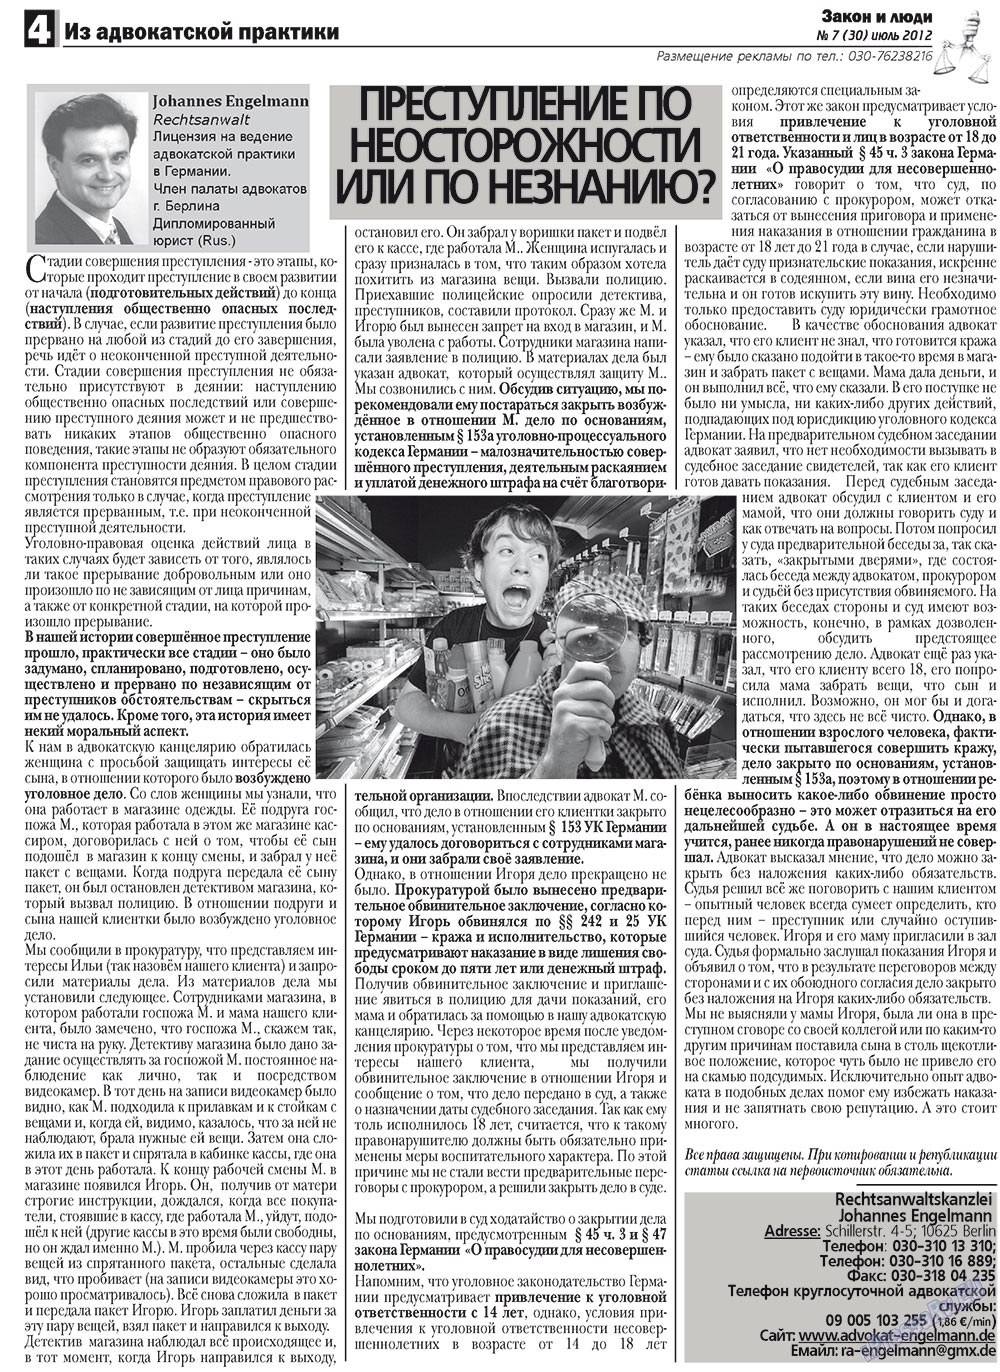 Закон и люди, газета. 2012 №7 стр.4